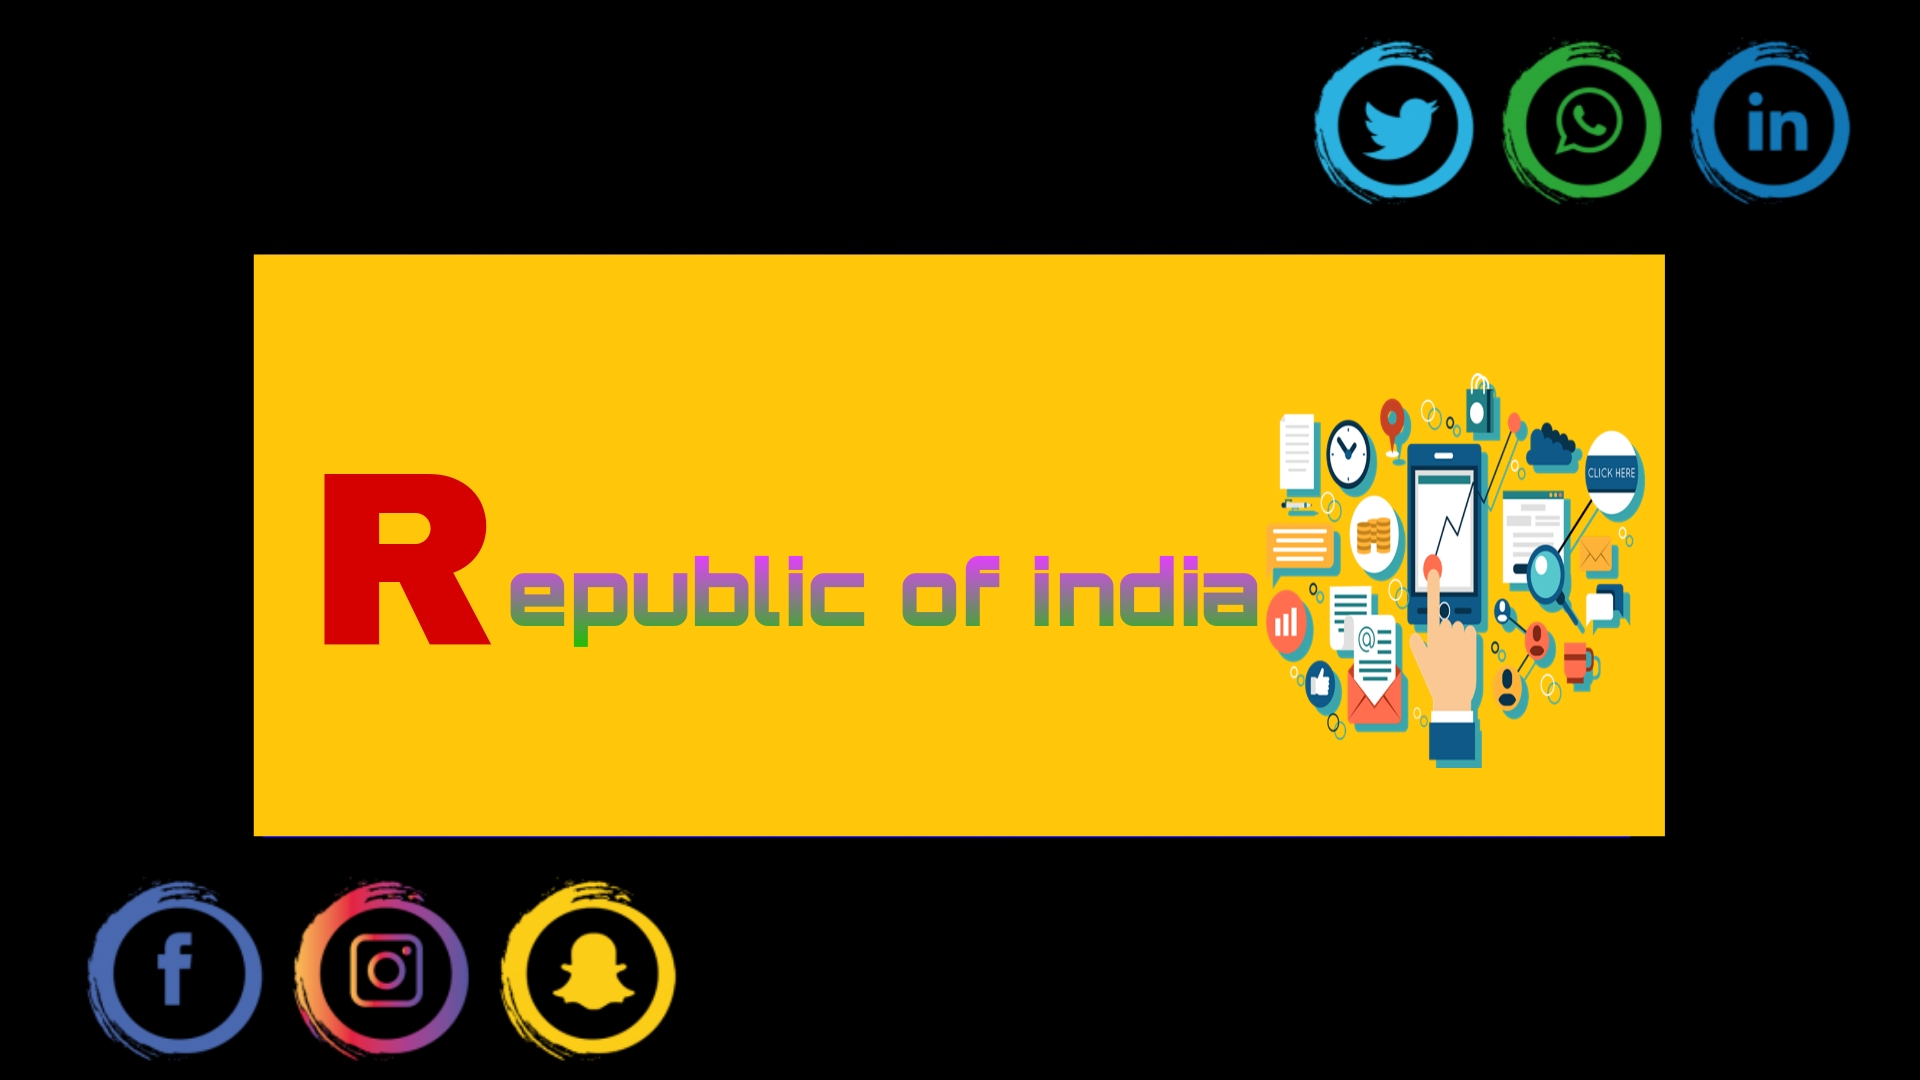 Republic of india